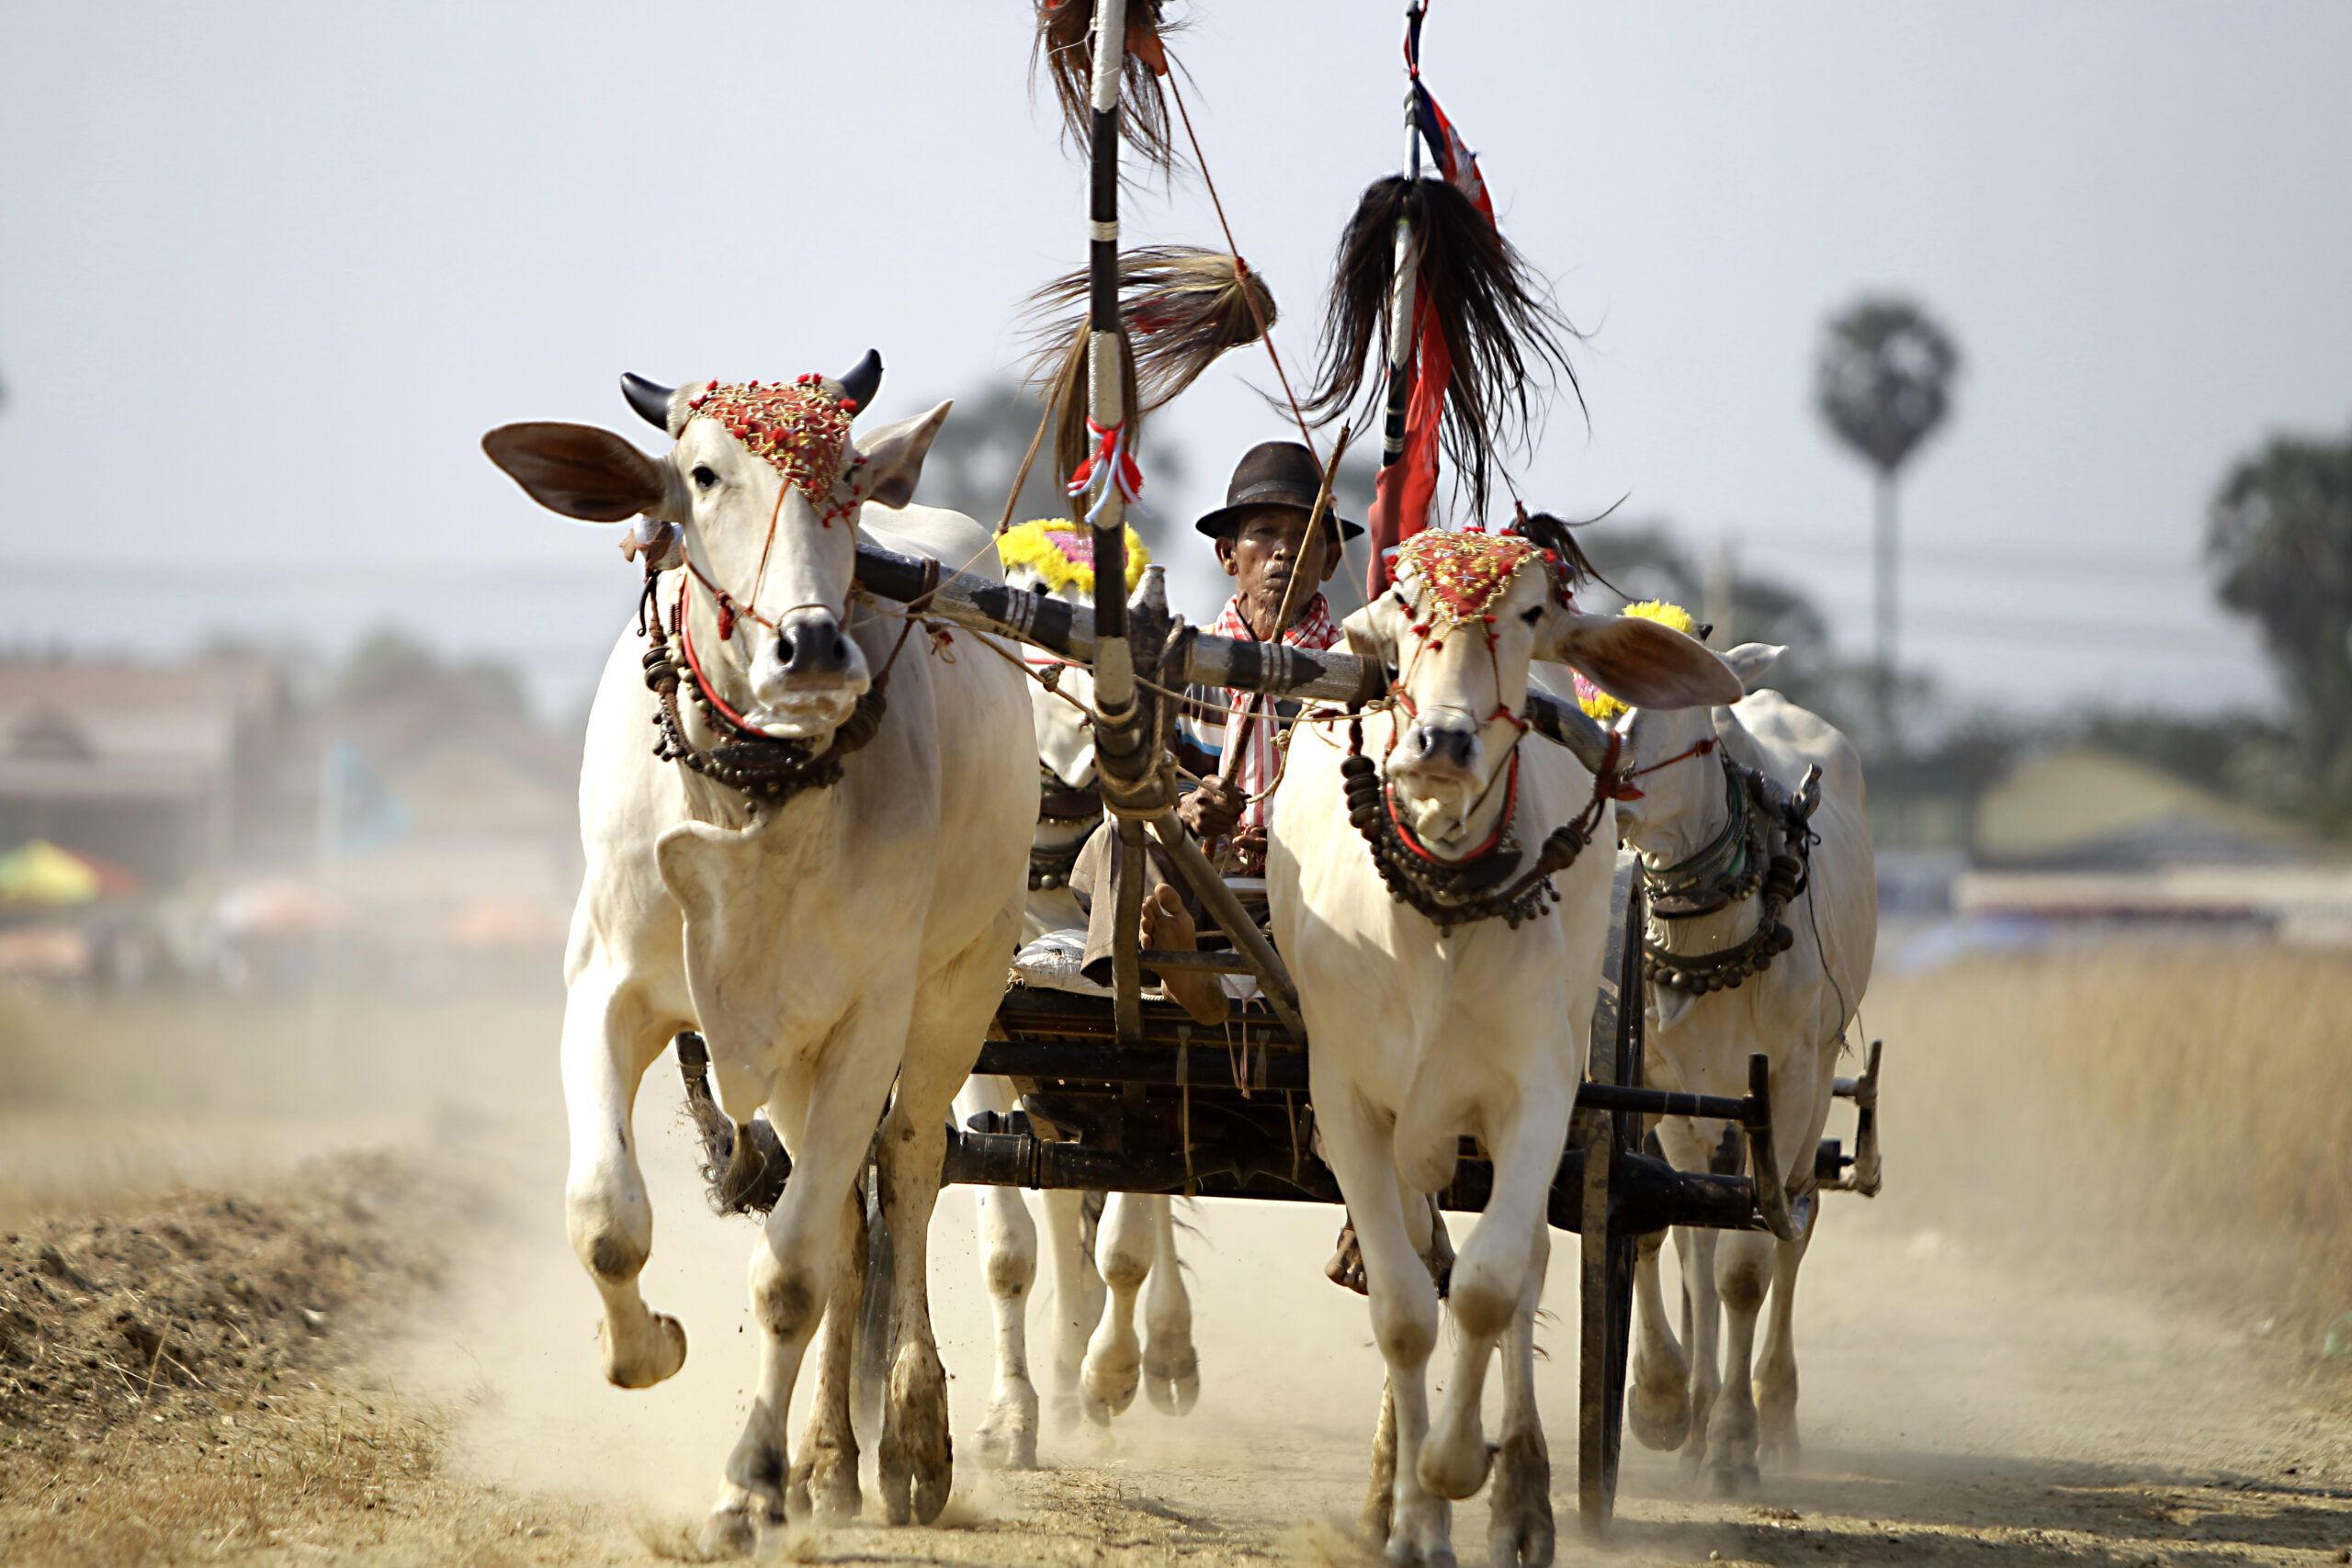 กัมพูชาจัดแข่ง 'วิ่งวัวเทียมเกวียน' ประเพณีเก่าแก่หลายร้อยปี